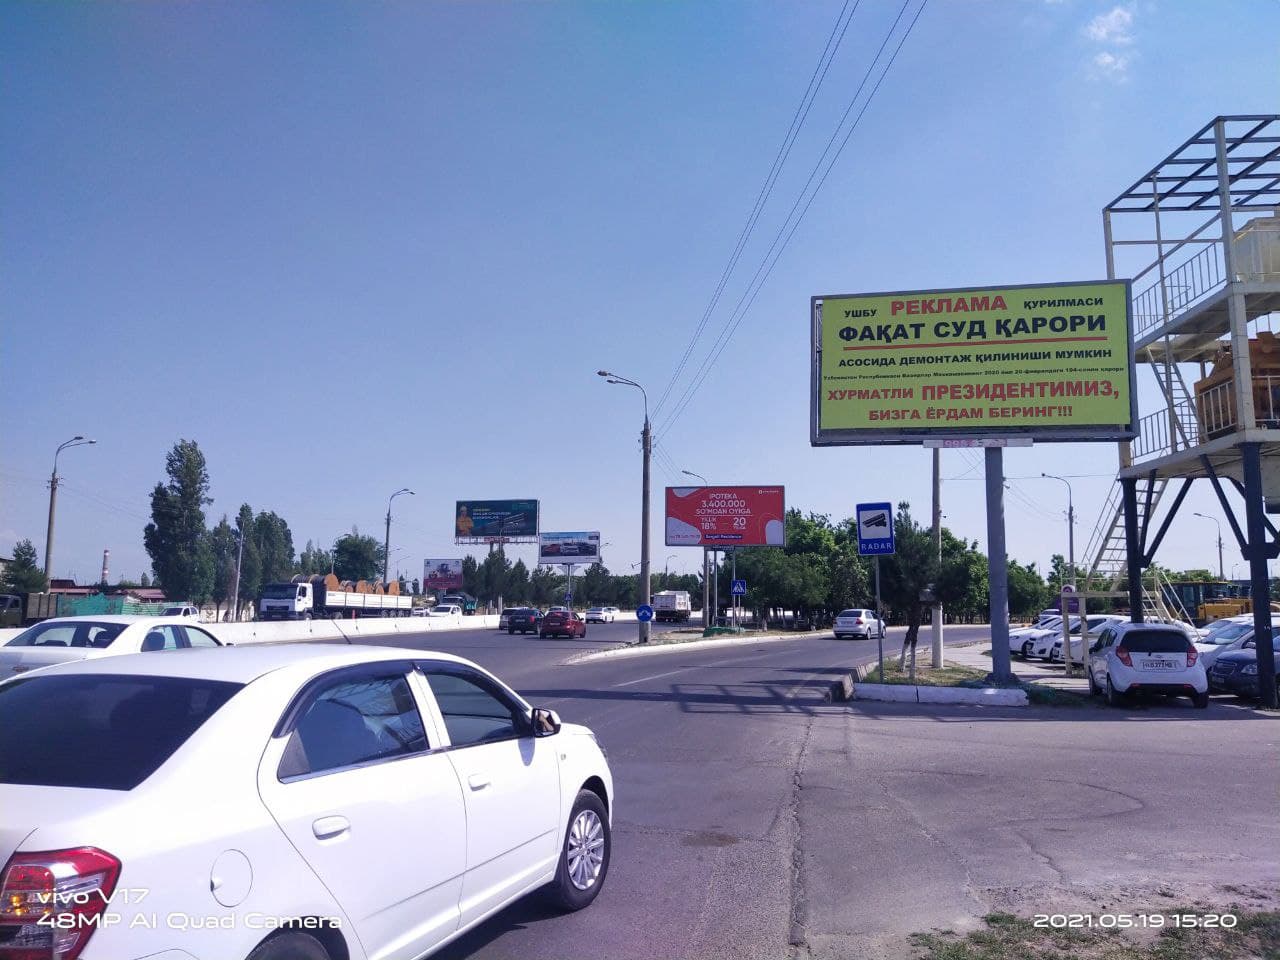 Ташкентские предприниматели обратились к президенту через рекламные баннеры